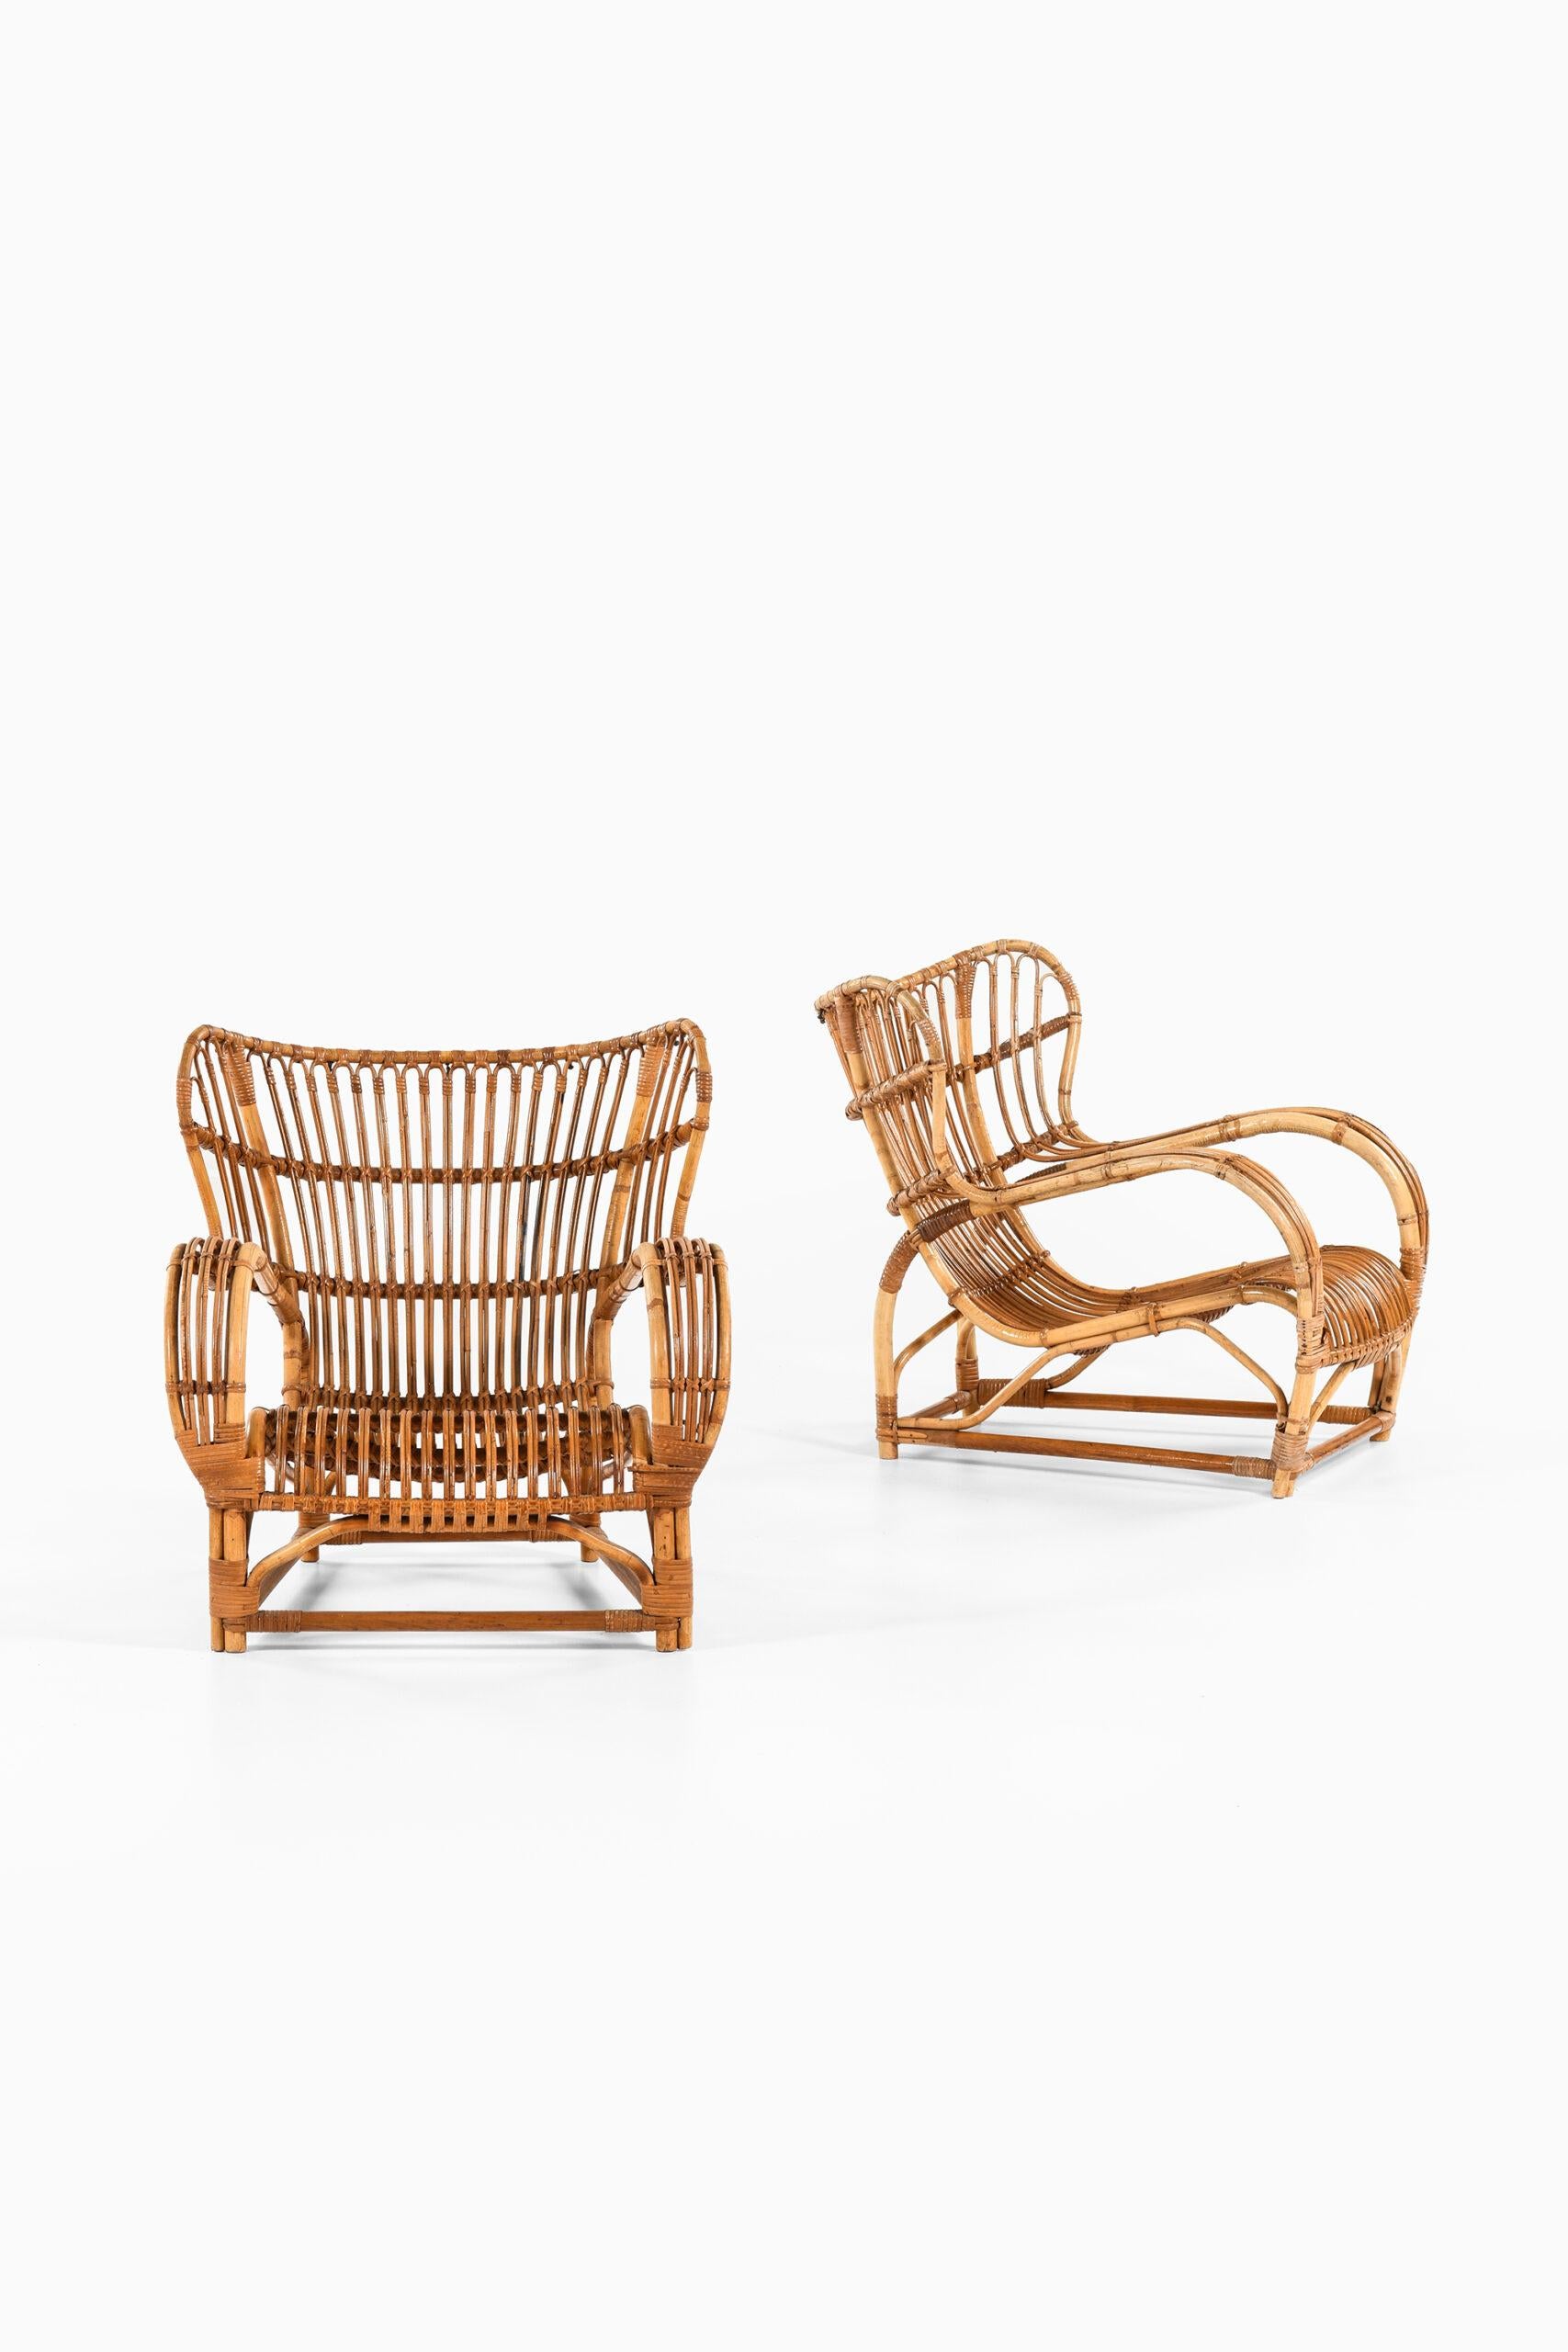 Seltenes Paar Sessel Modell 3440, entworfen von Viggo Boesen. Produziert von R. Wengler in Dänemark.
Original-Kissen (für 1 Stuhl).